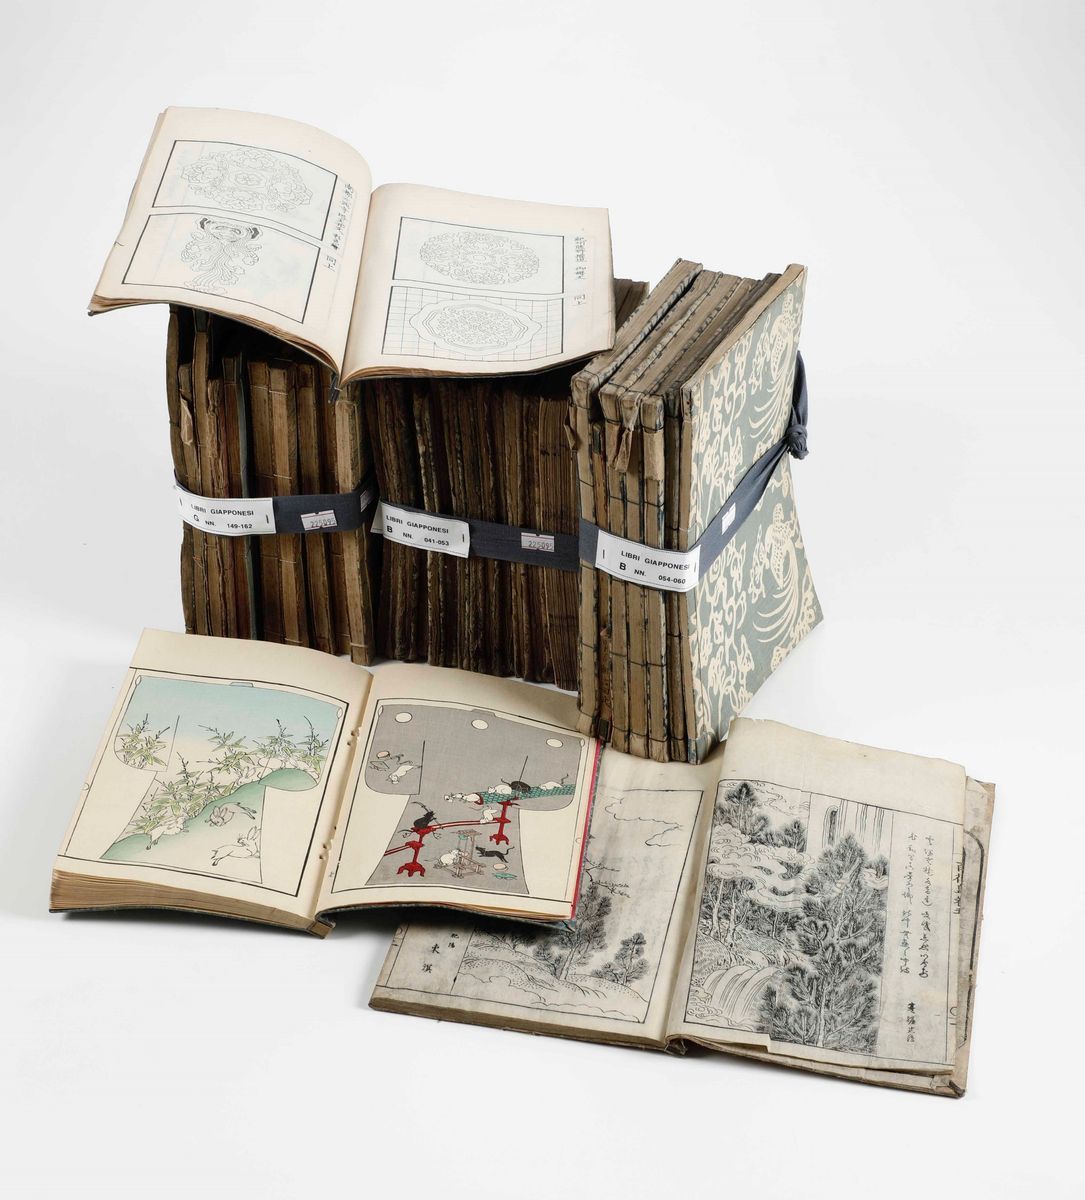 Giappone - Cultura nipponica Lotto di libri giapponesi. Secolo XIX. - Asta  Stampe, Incisioni Antiche, Carte geografiche e Libri